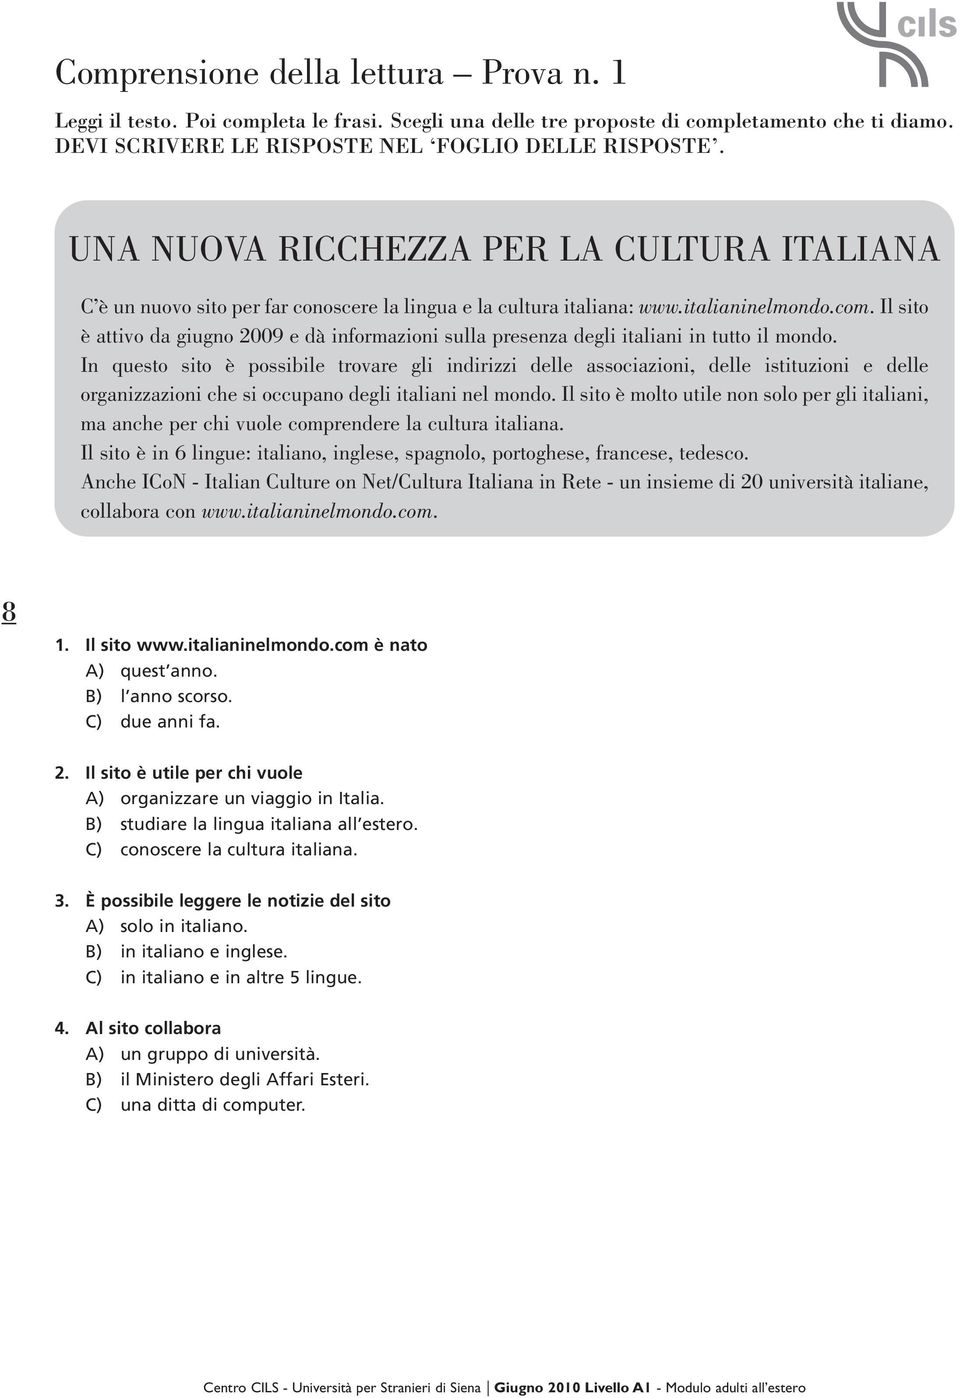 Il sito è attivo da giugno 2009 e dà informazioni sulla presenza degli italiani in tutto il mondo.